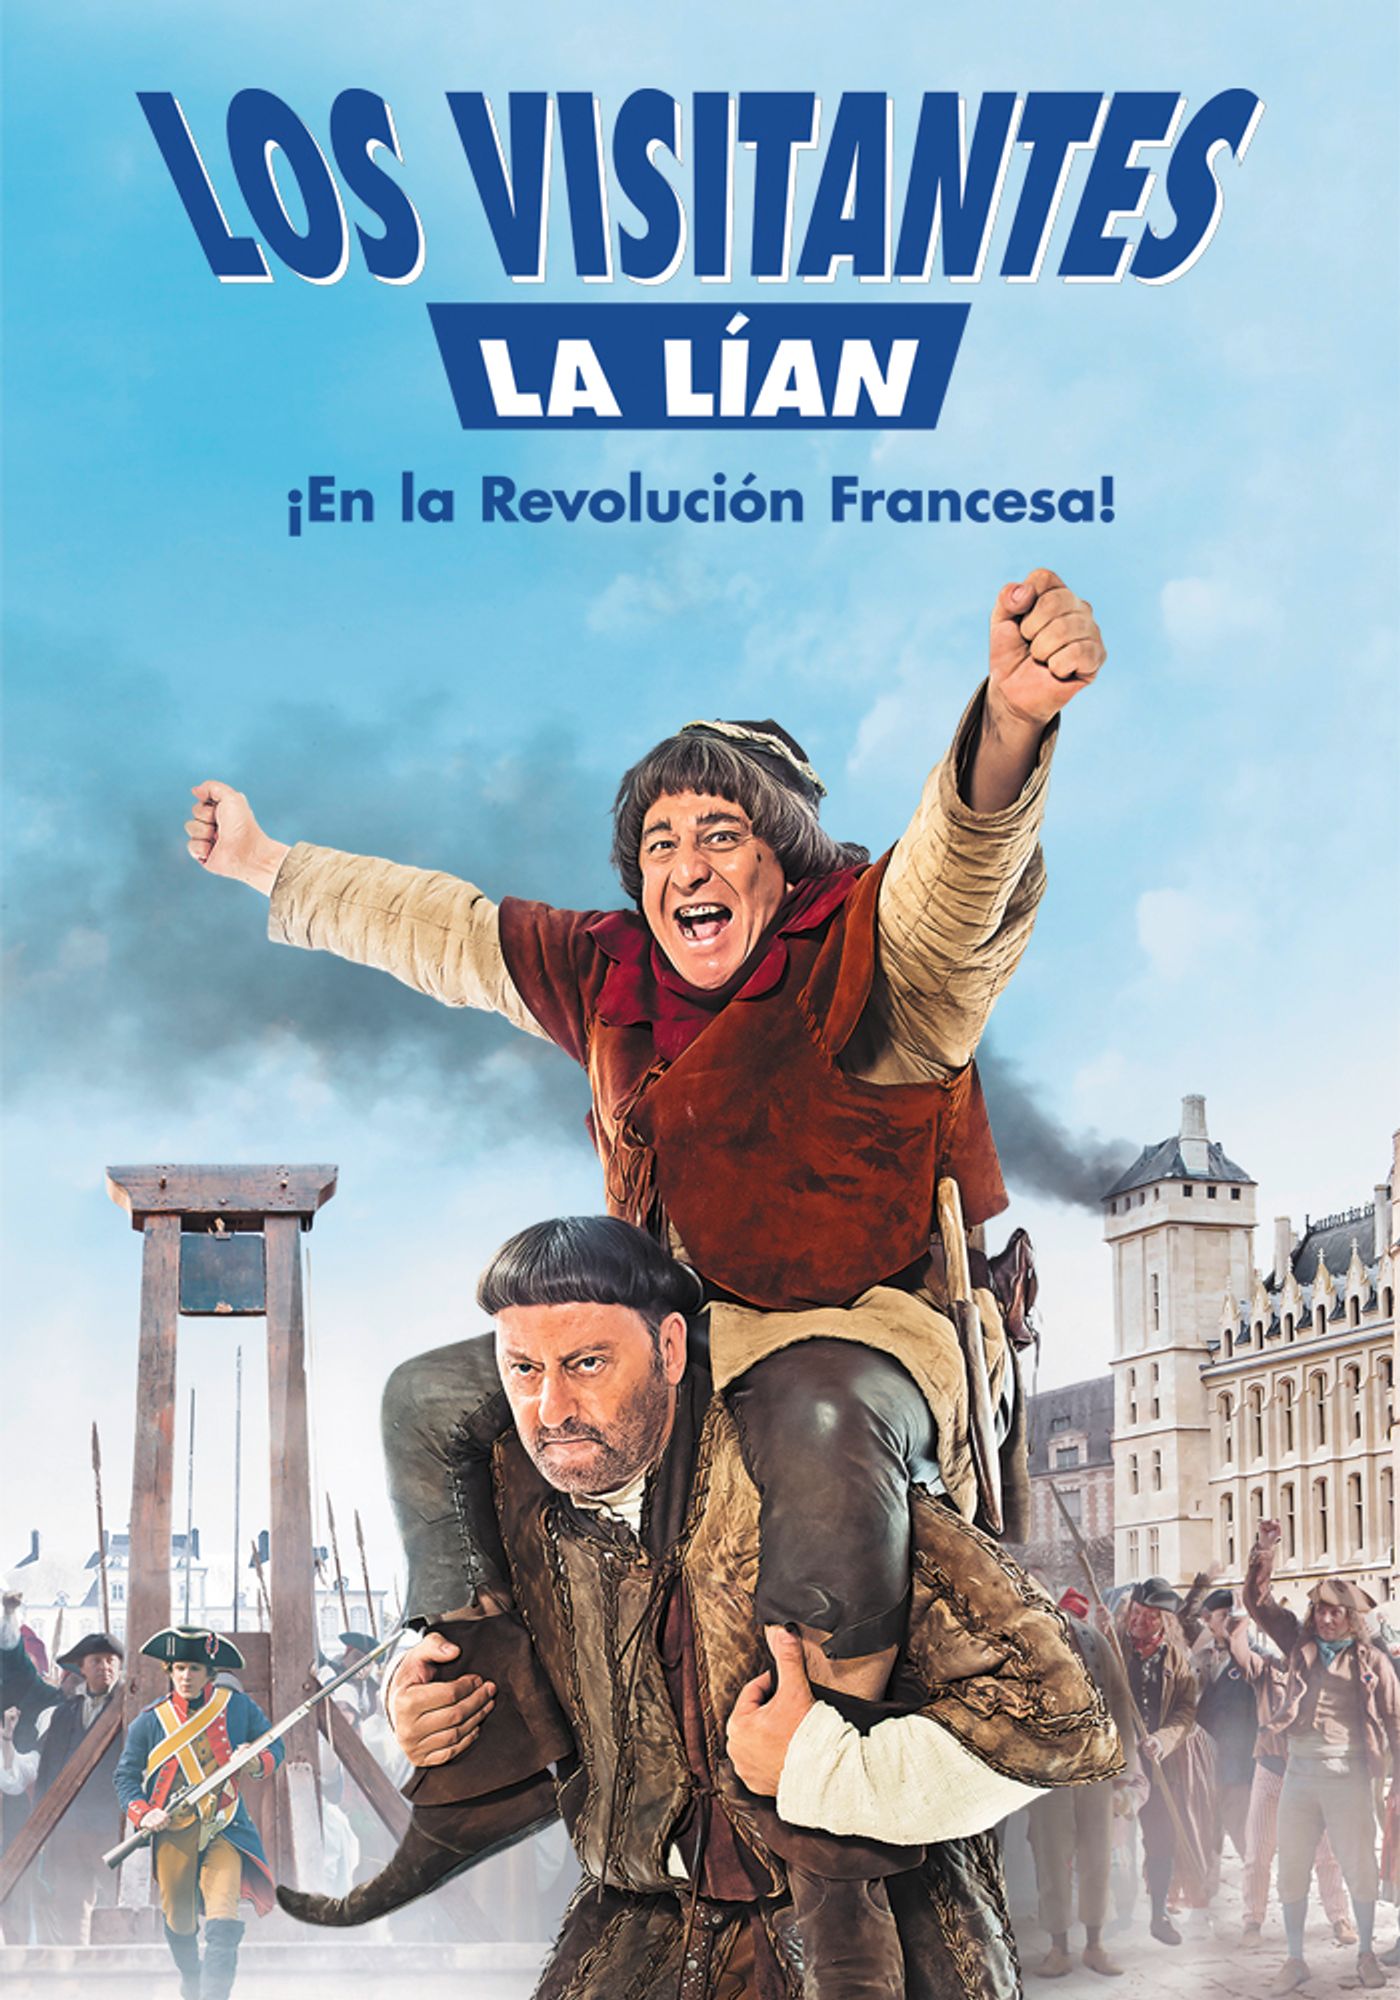 Los visitantes la lían (En la Revolución Francesa)